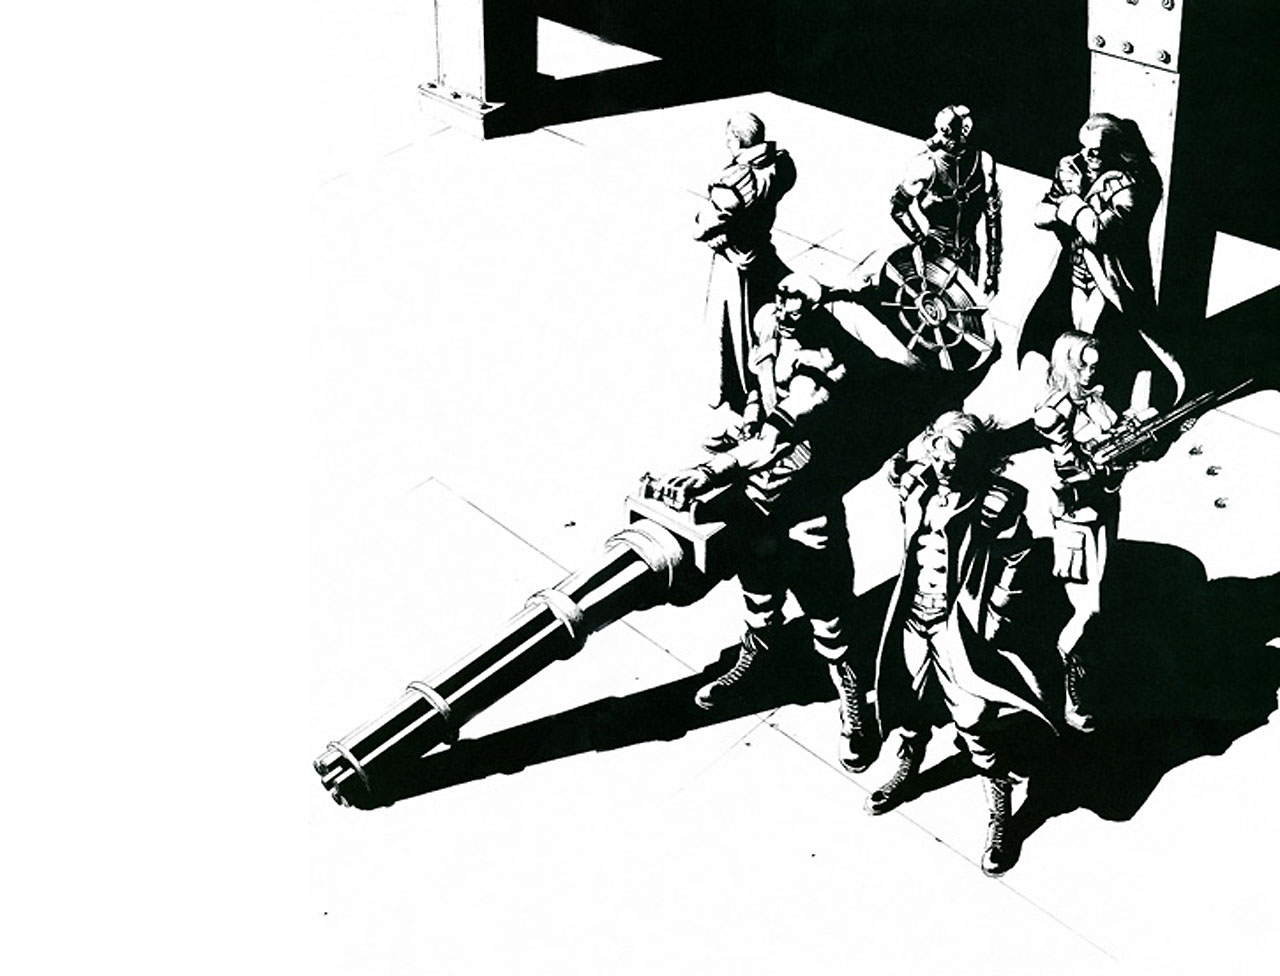 Metal Gear Solid 4 HD Wallpaper | 1920x1080 | ID:25180